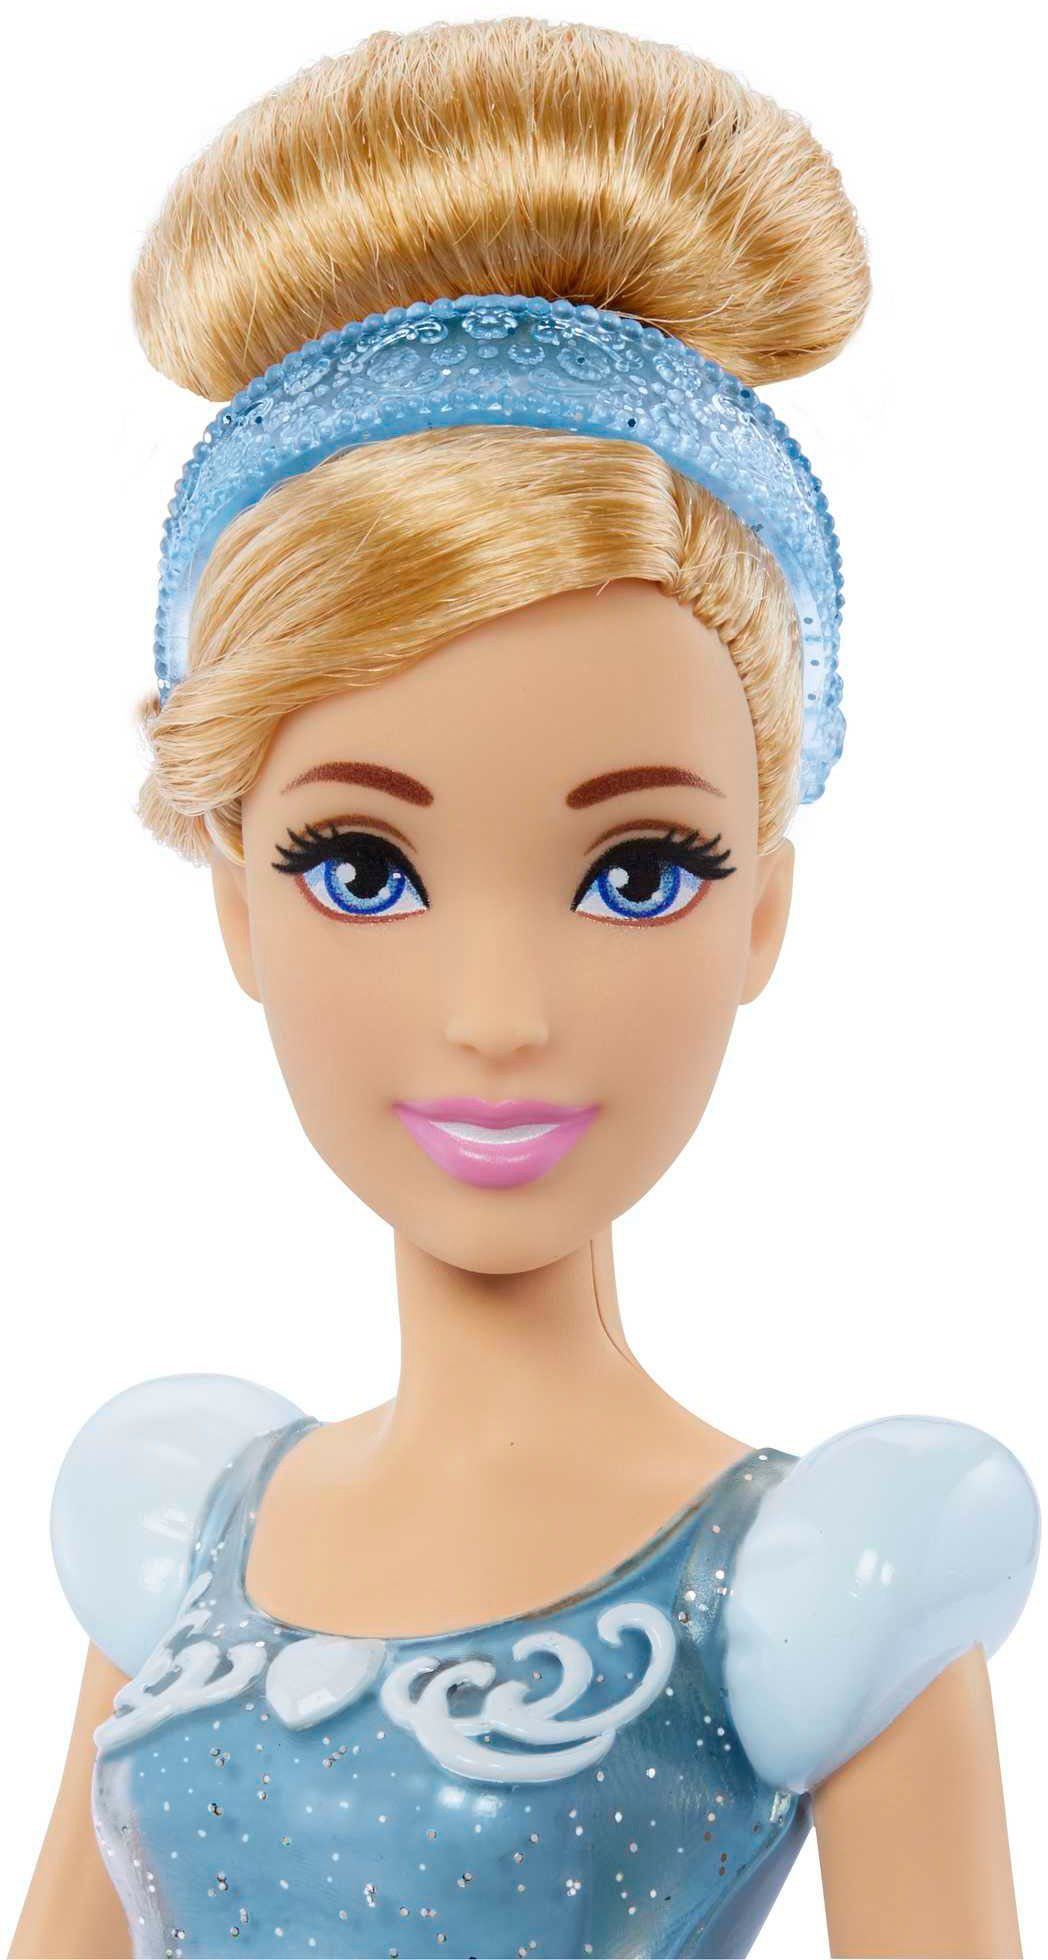 Mattel® Anziehpuppe Disney Princess Modepuppe Cinderella